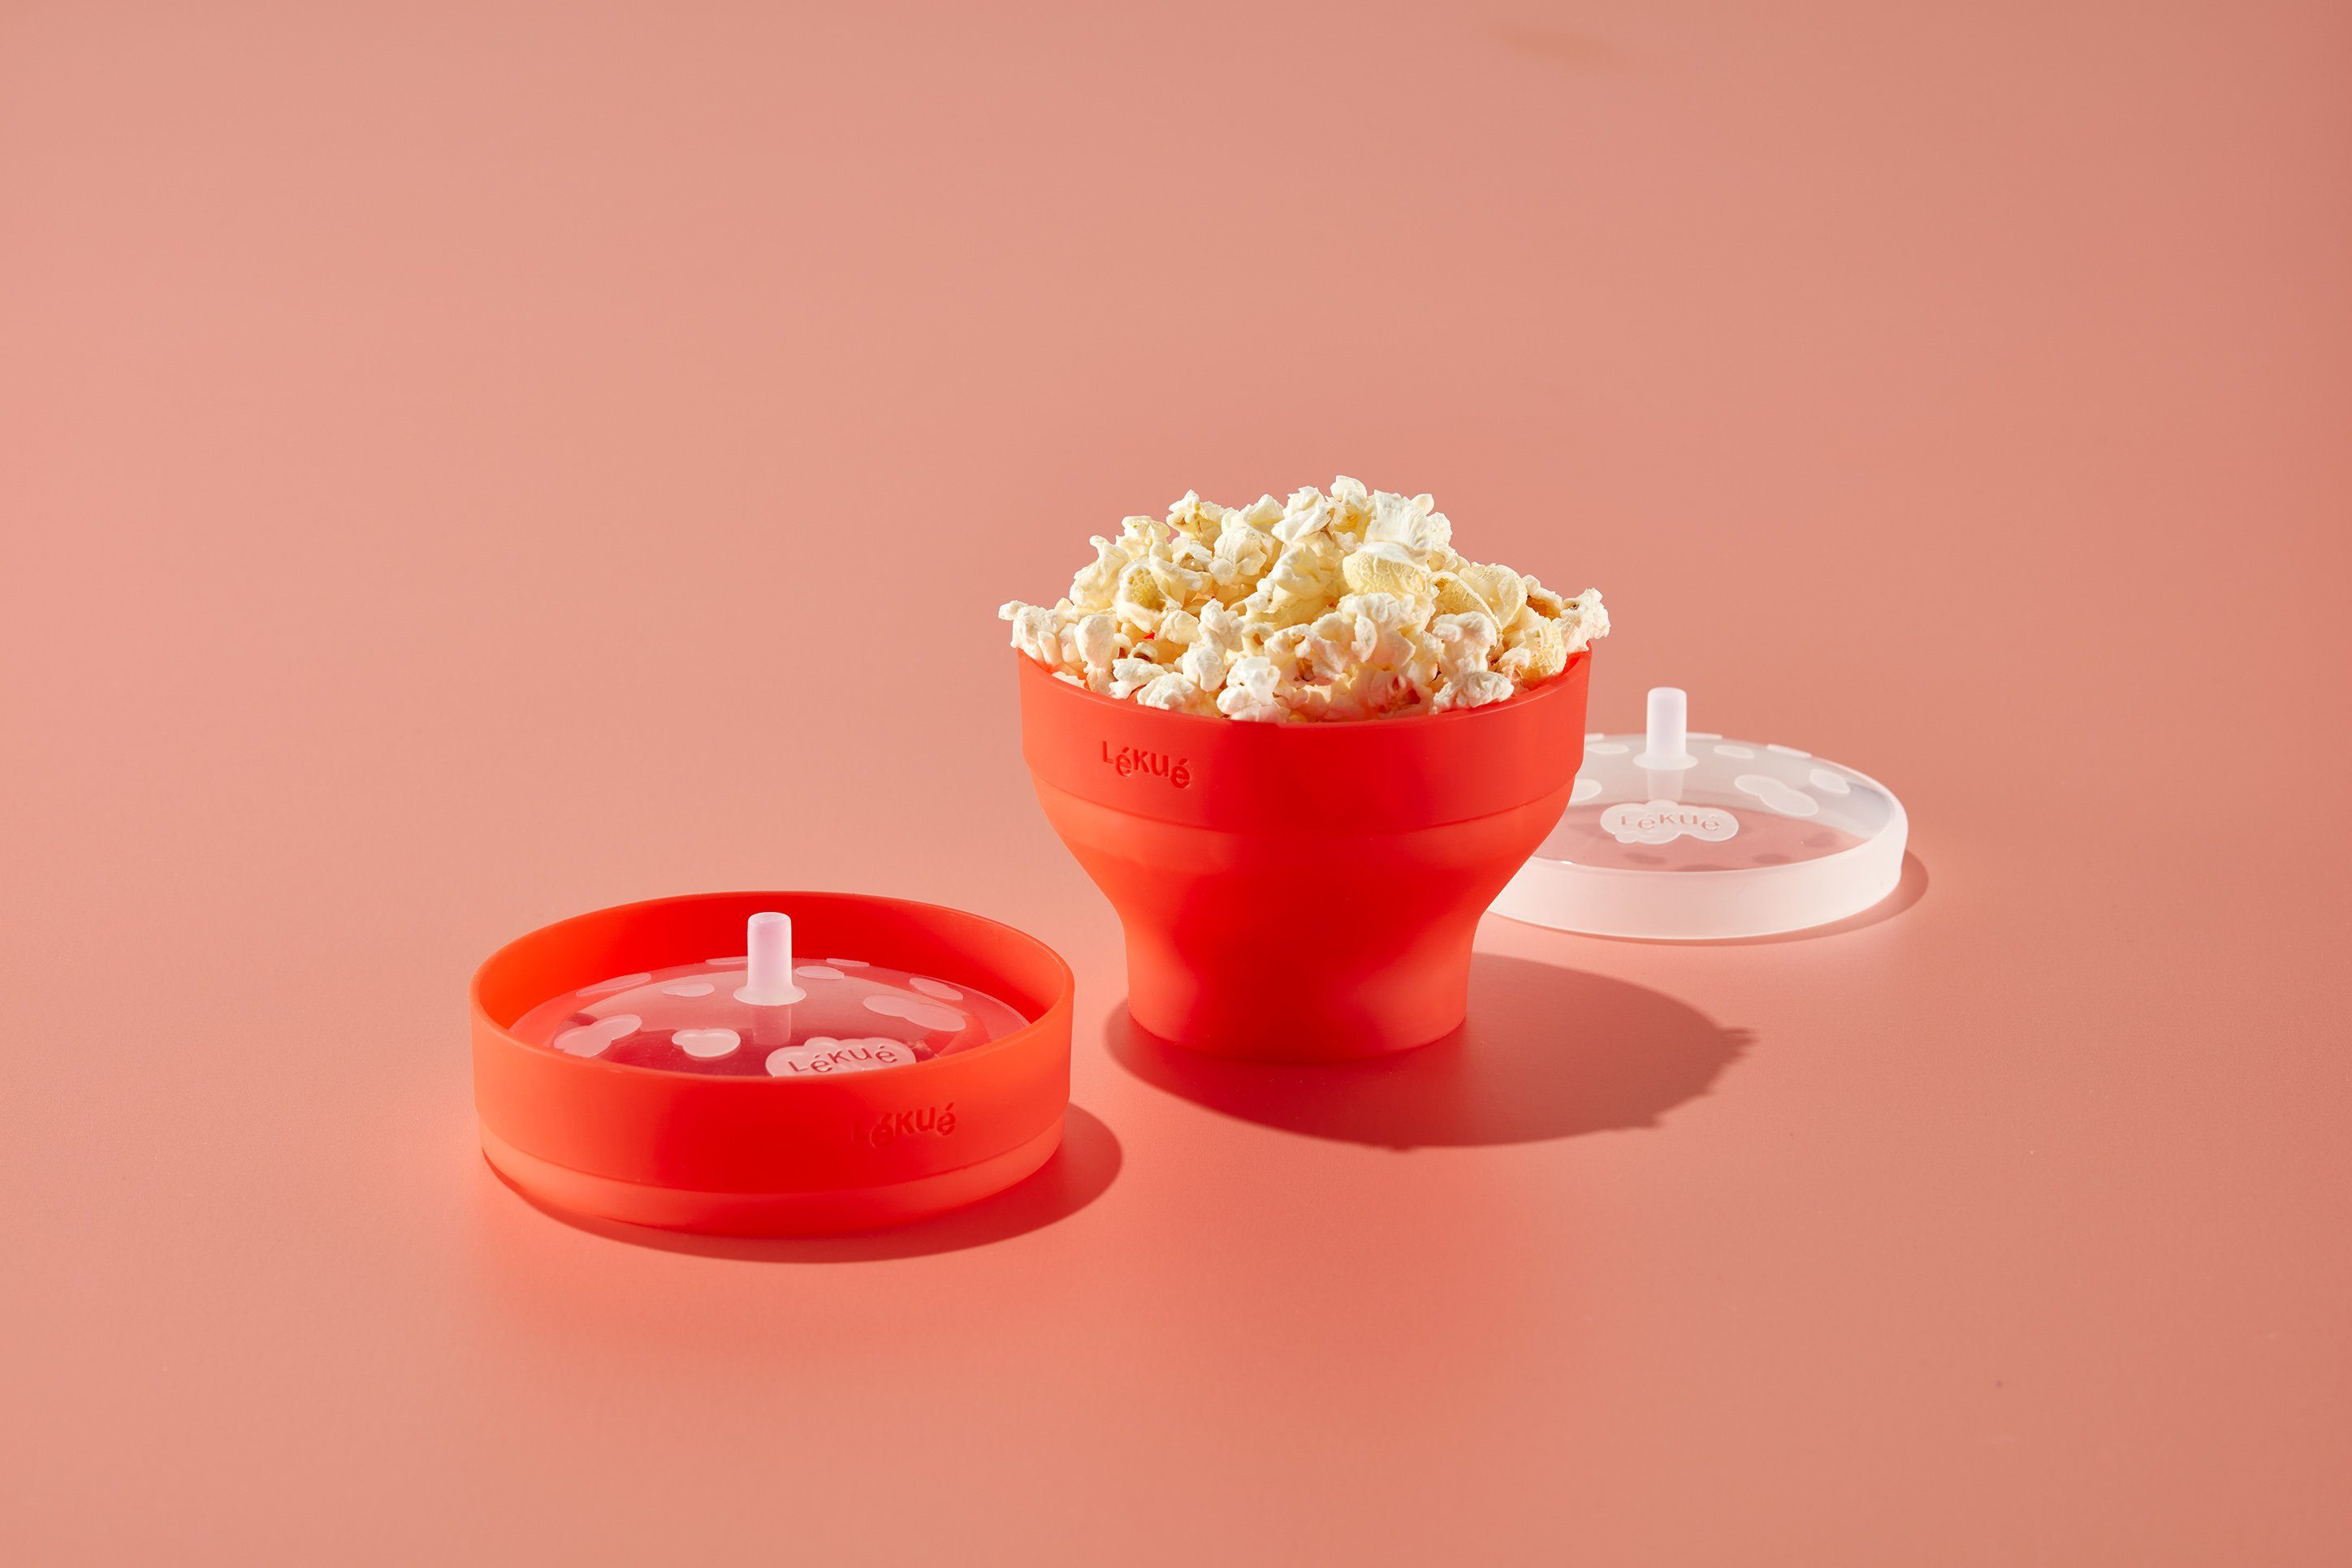 LEKUE Popcornmaschine Popcorn Maker Mini